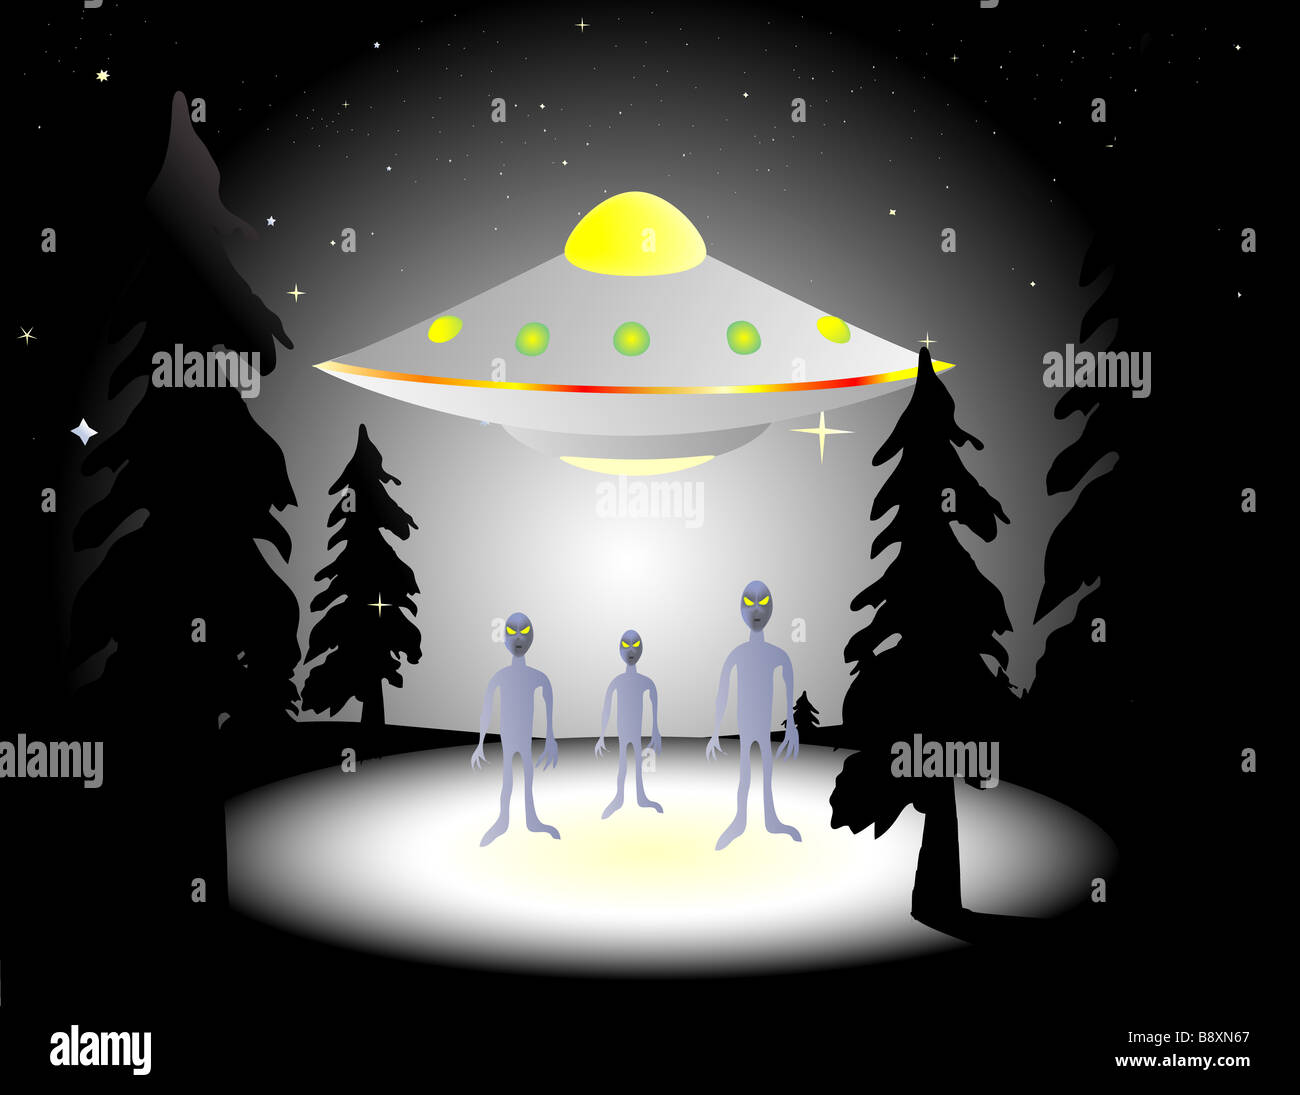 Abbildung von Aliens und fliegende Untertasse im Wald bei Nacht Stockfoto